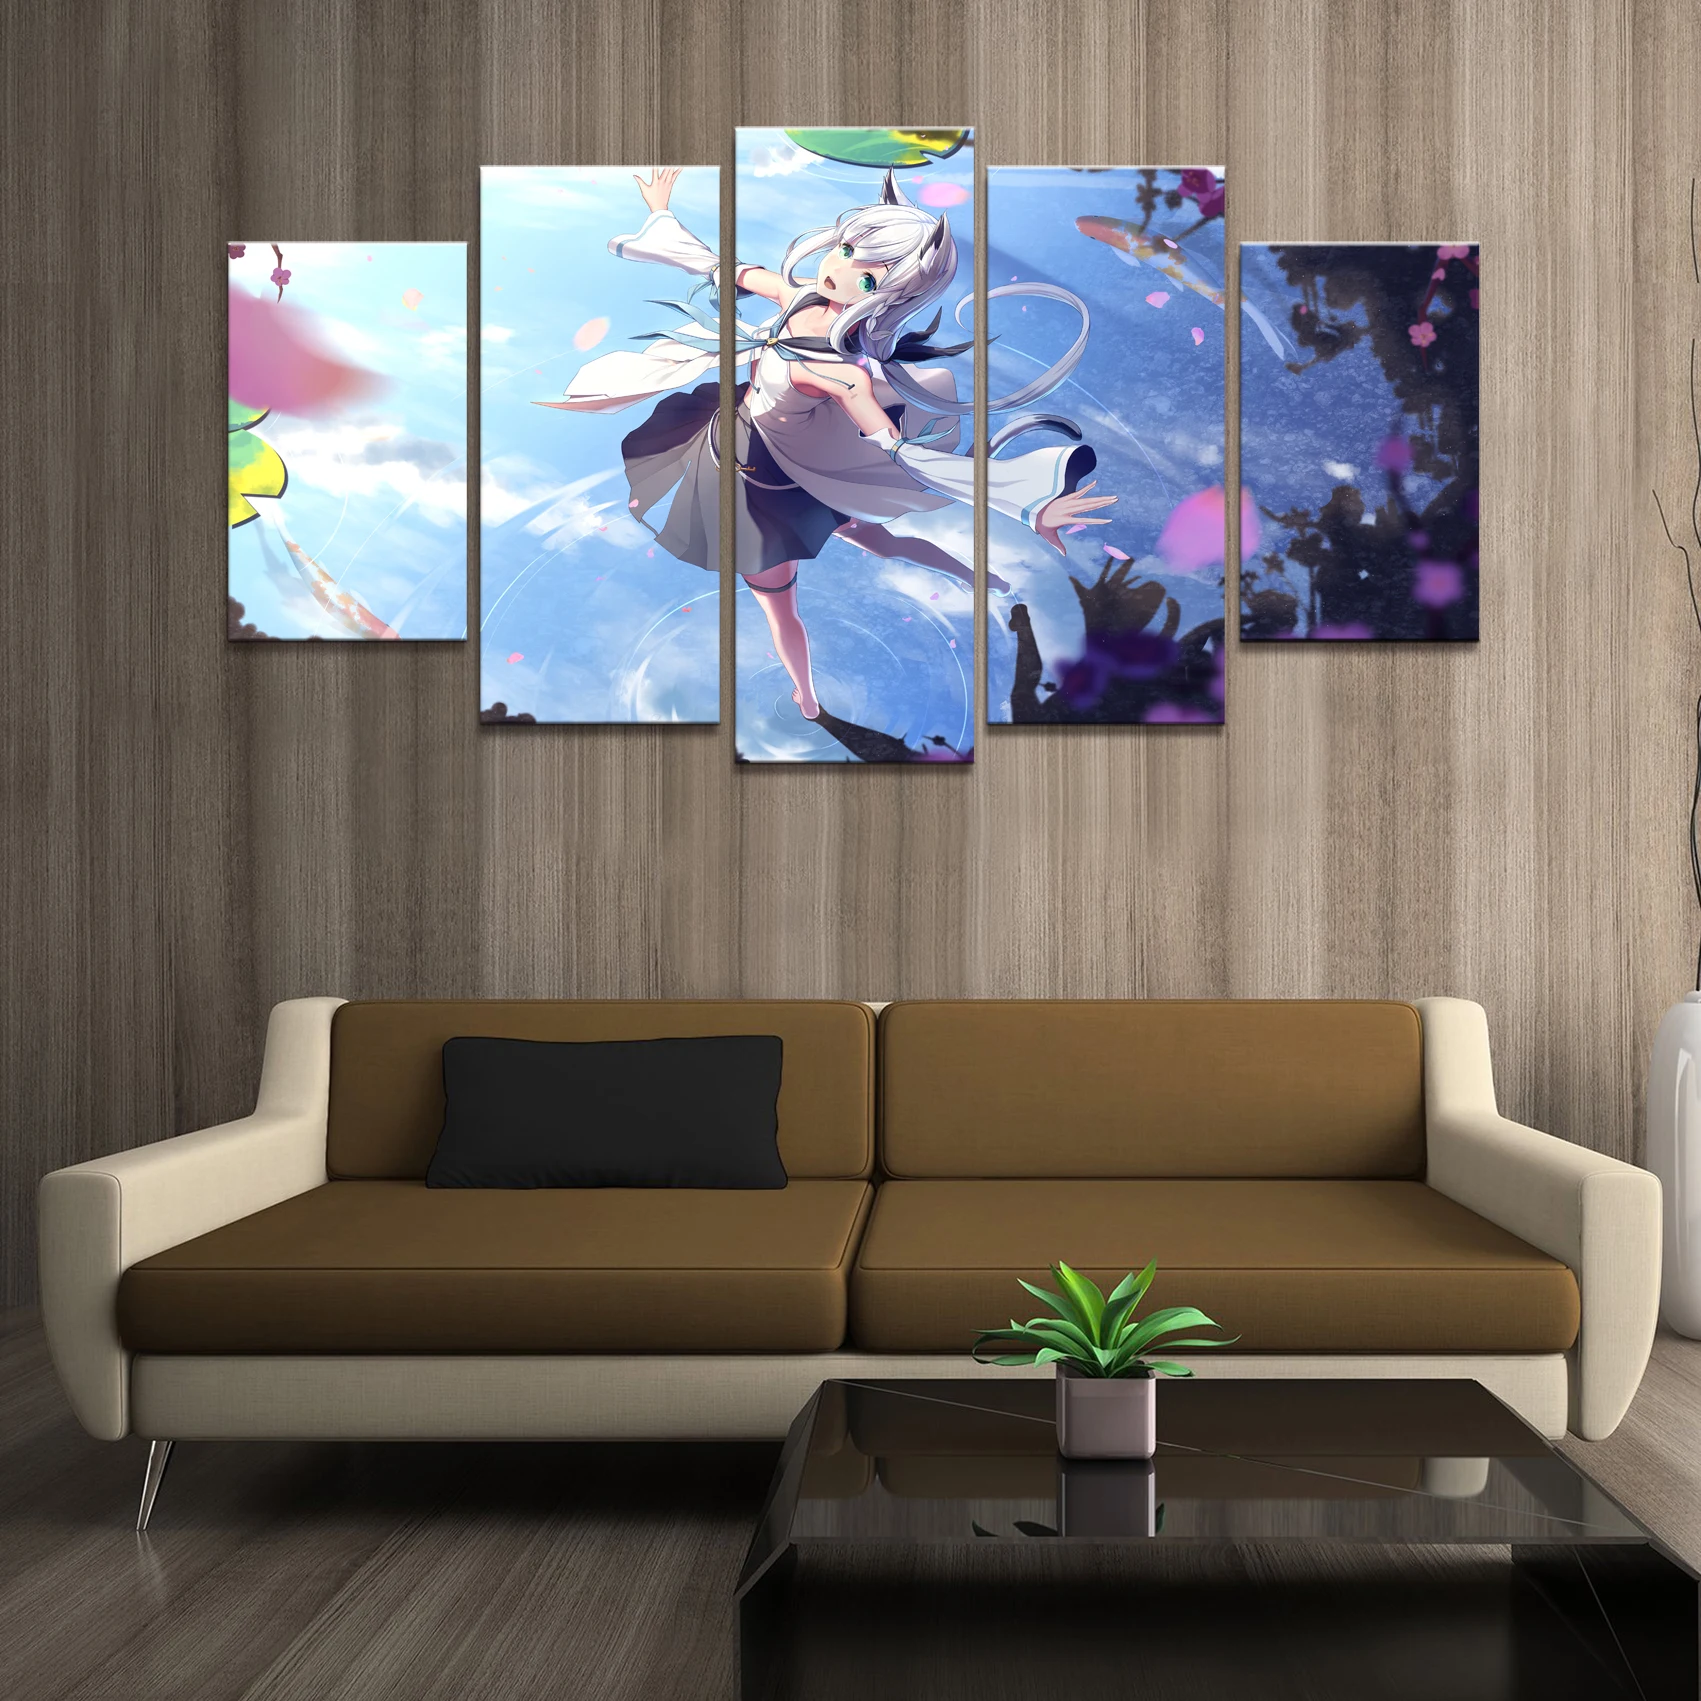 

Домашний декор плакат HD фотографии печать холст 5 шт. модульная девушка танцы на воде аниме гостиная декоративная живопись